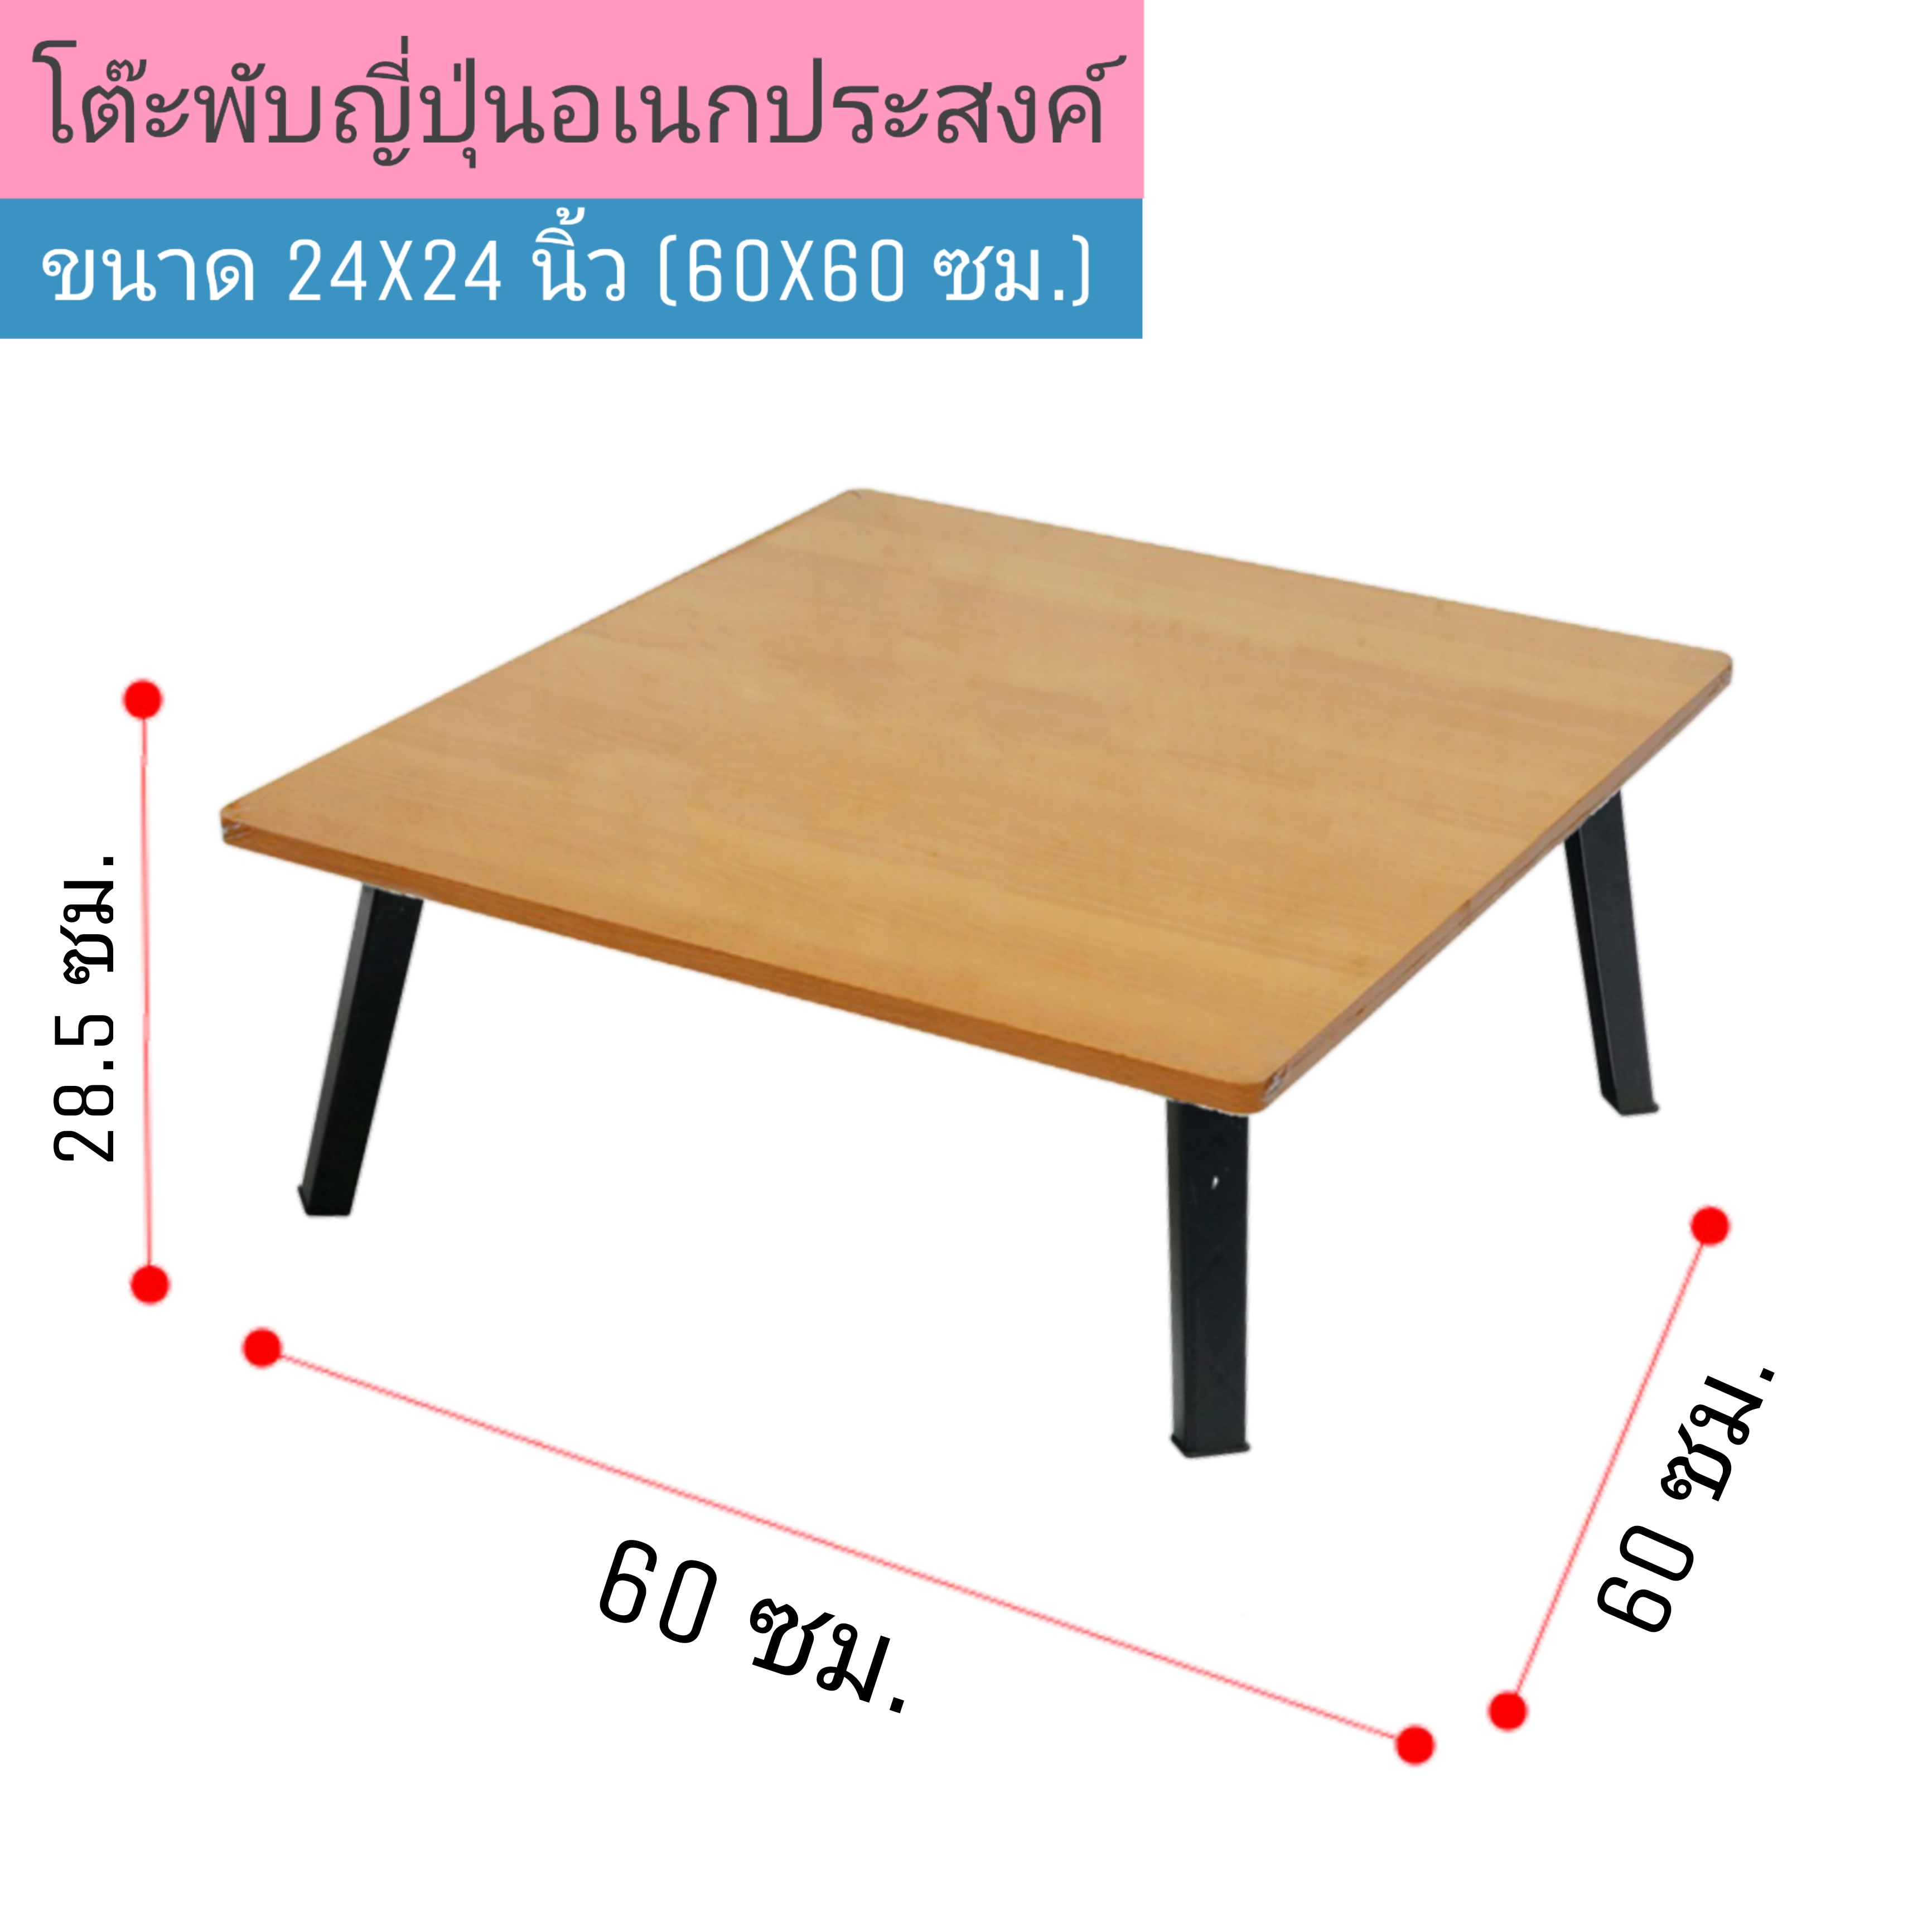 โต๊ะญี่ปุ่น ขาพลาสติก ขนาด 24x24 นิ้ว (60x60 ซม.) ลายไม้ โต๊ะพับ